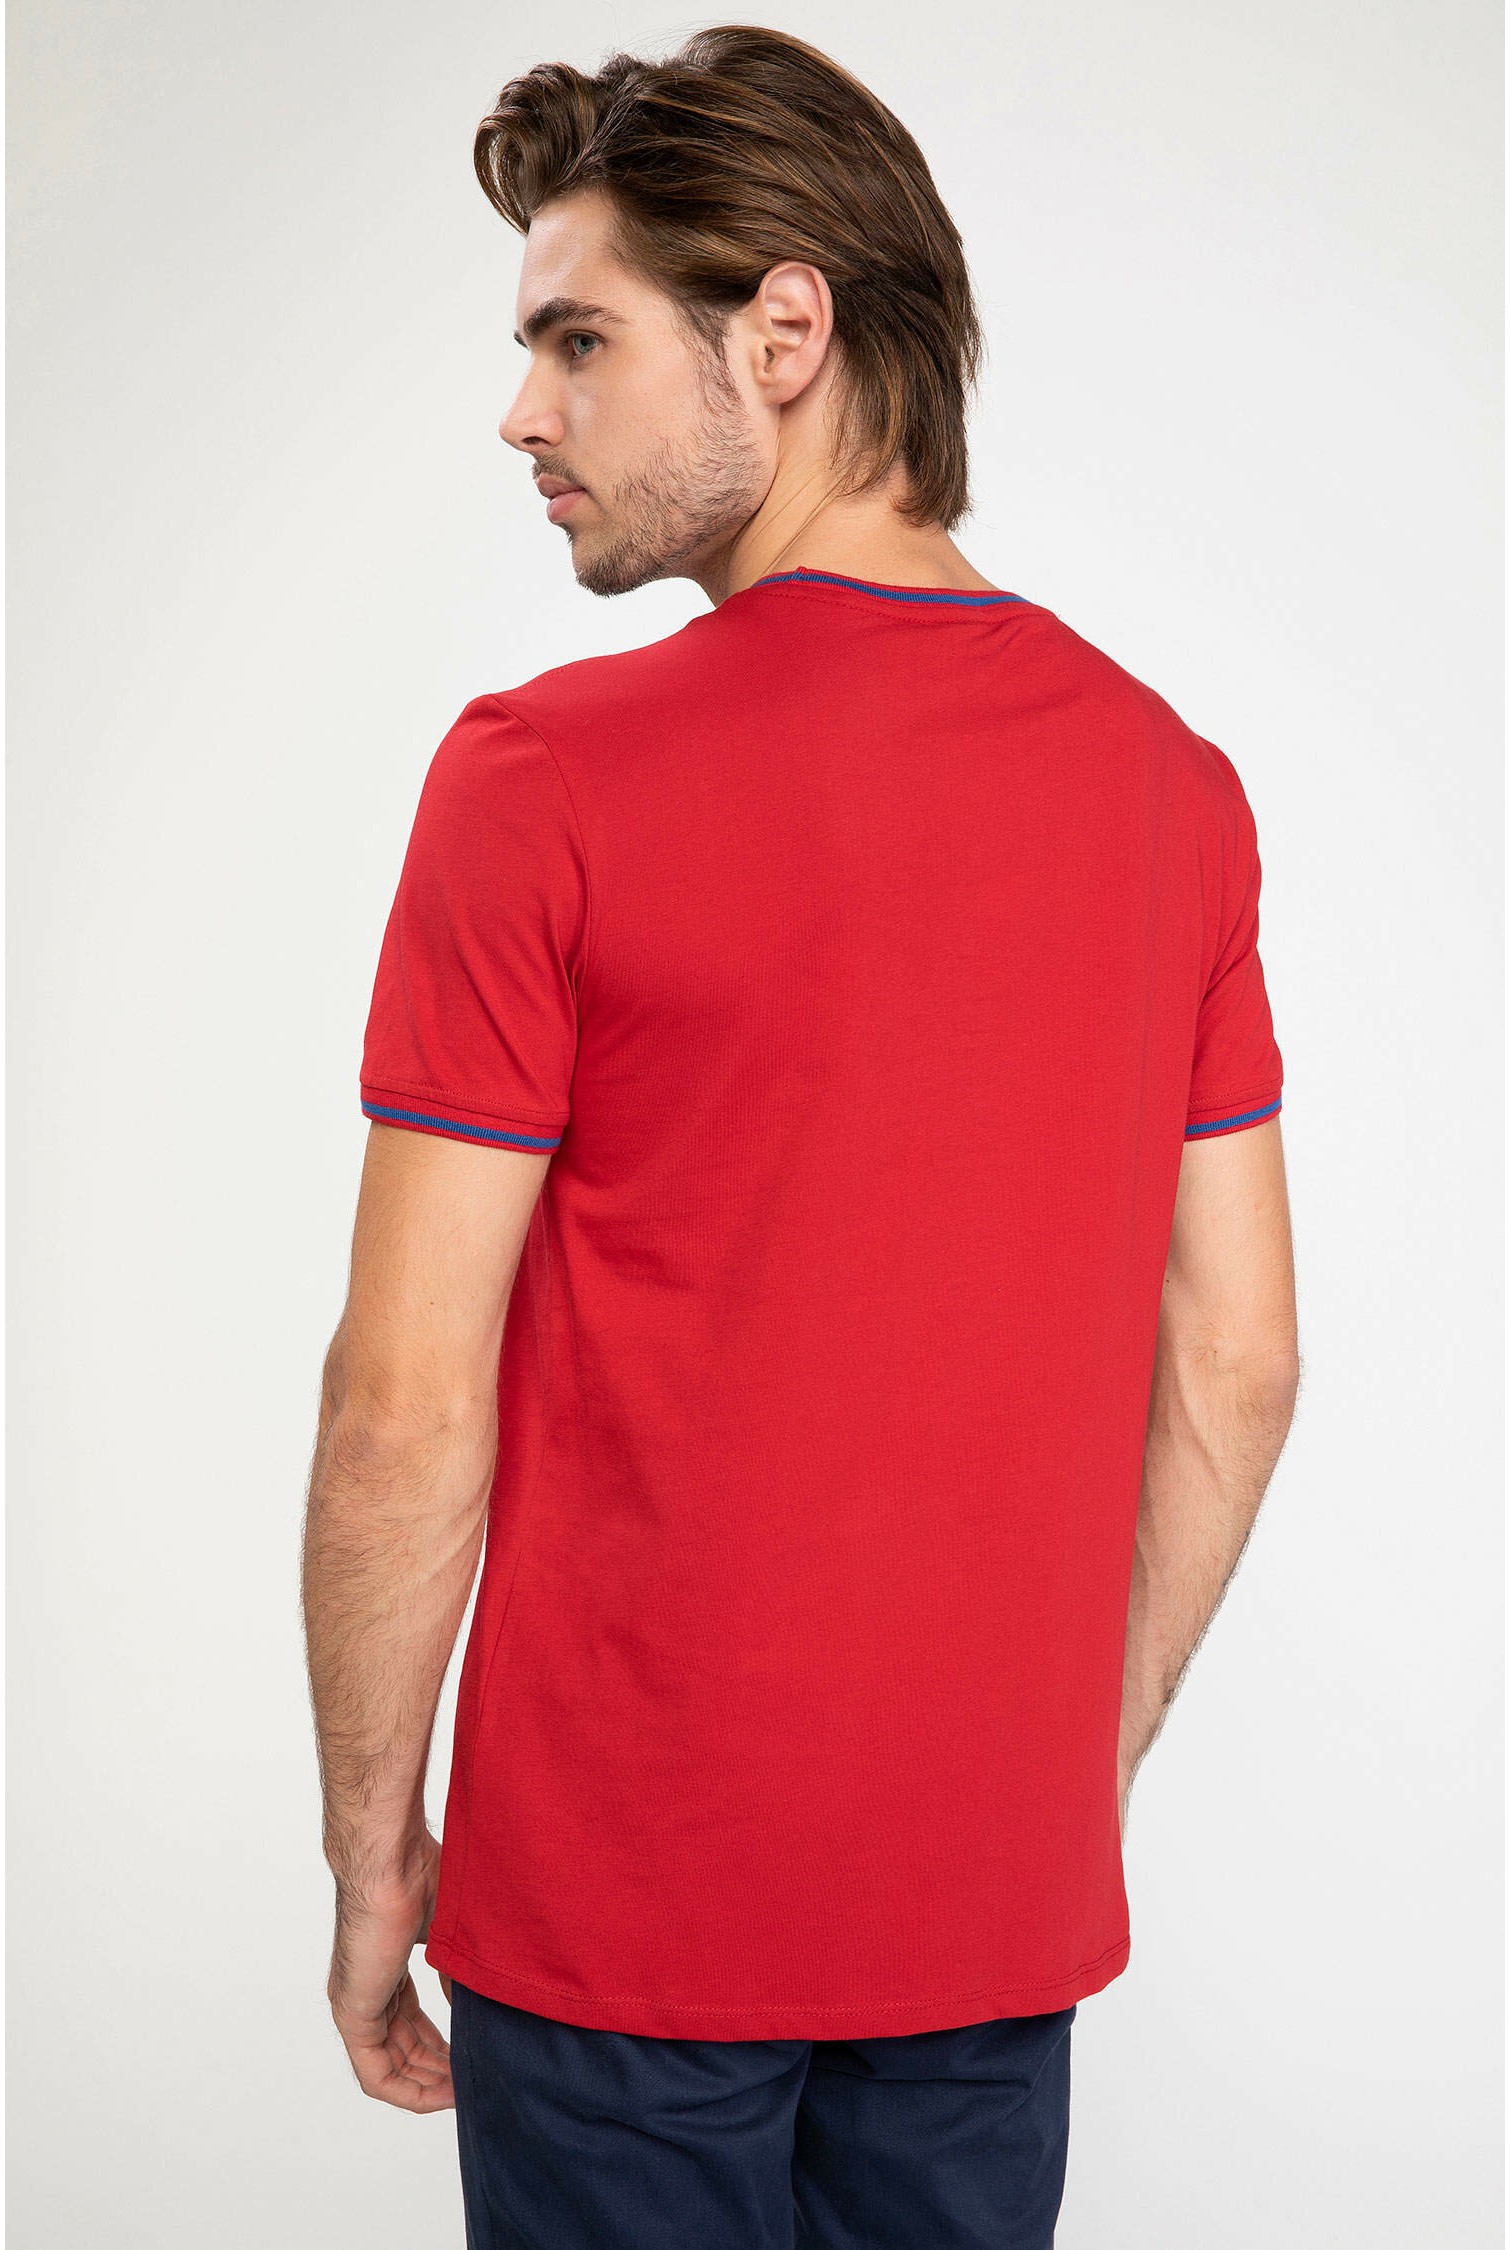 Defacto red men's T-shirt